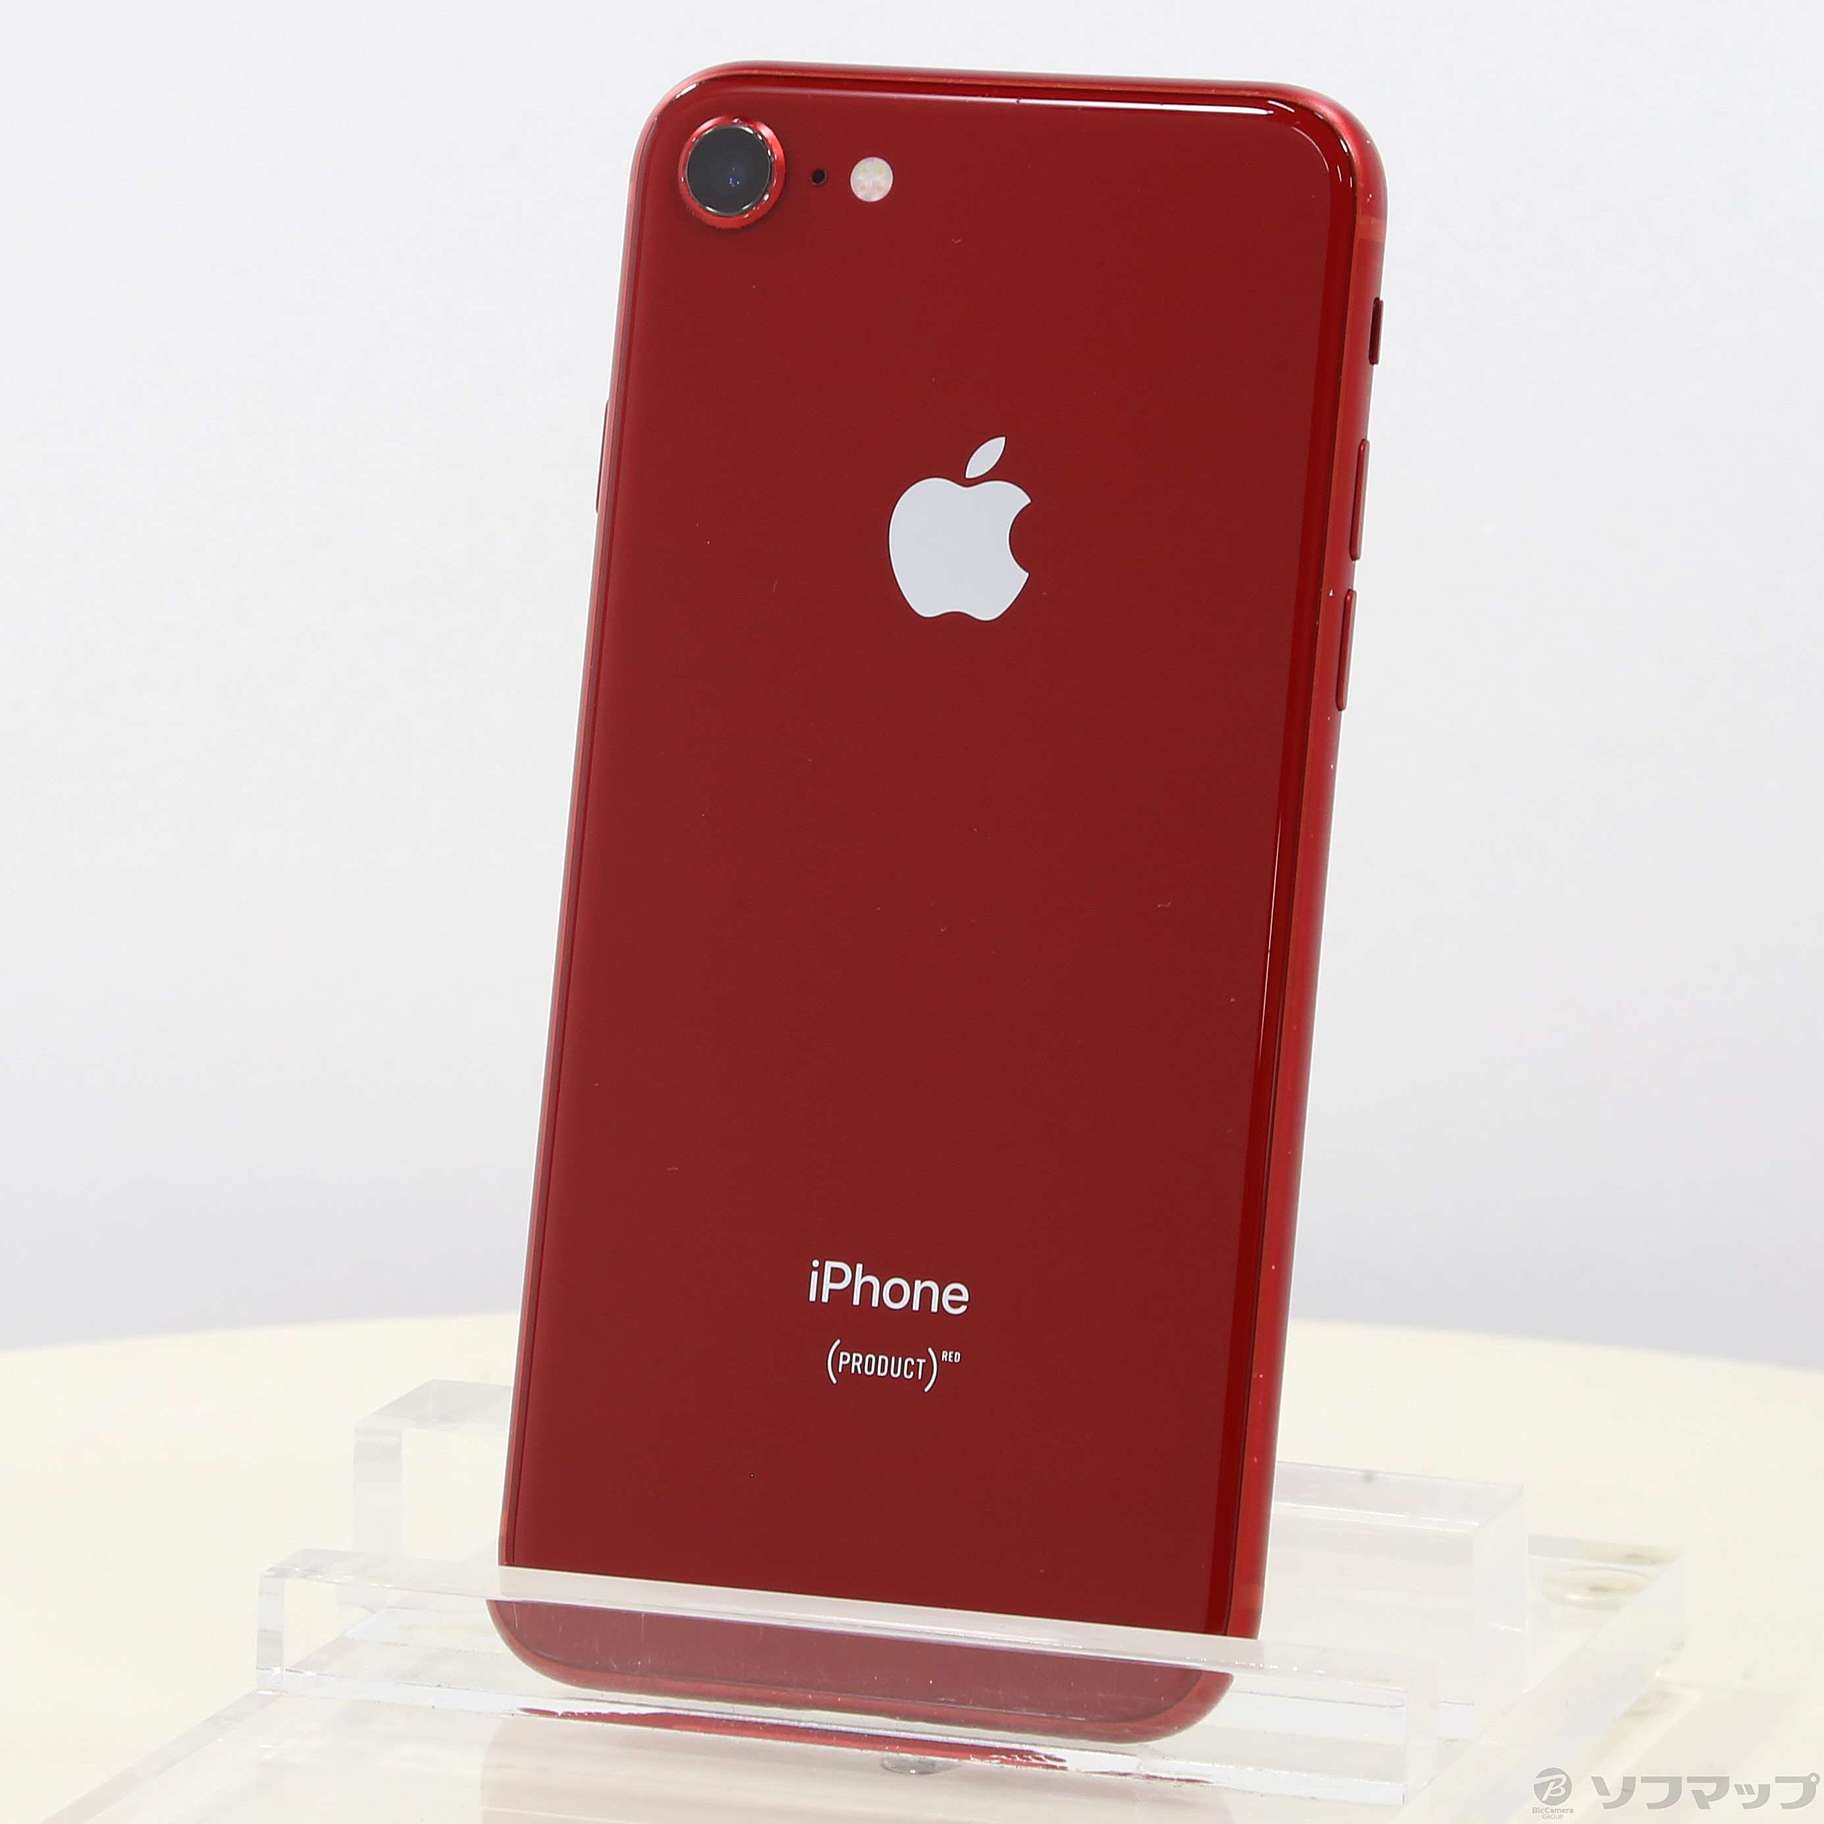 iPhone8 プロダクトレッド(赤) 64GB SIMフリー-